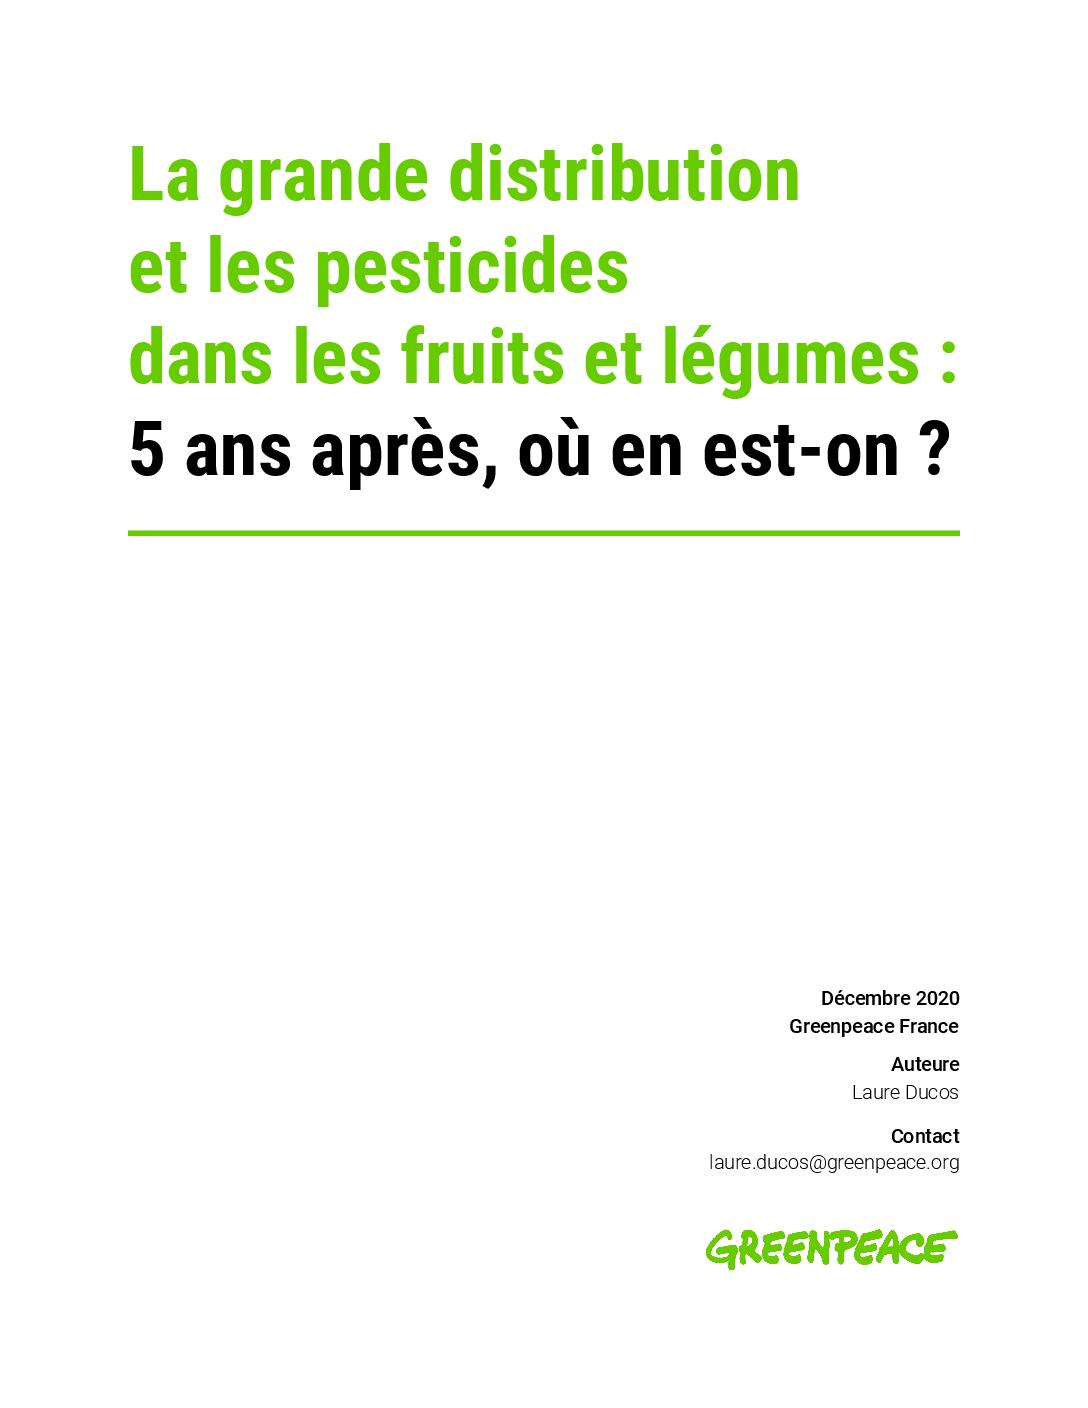 Les pesticides et la grande distribution